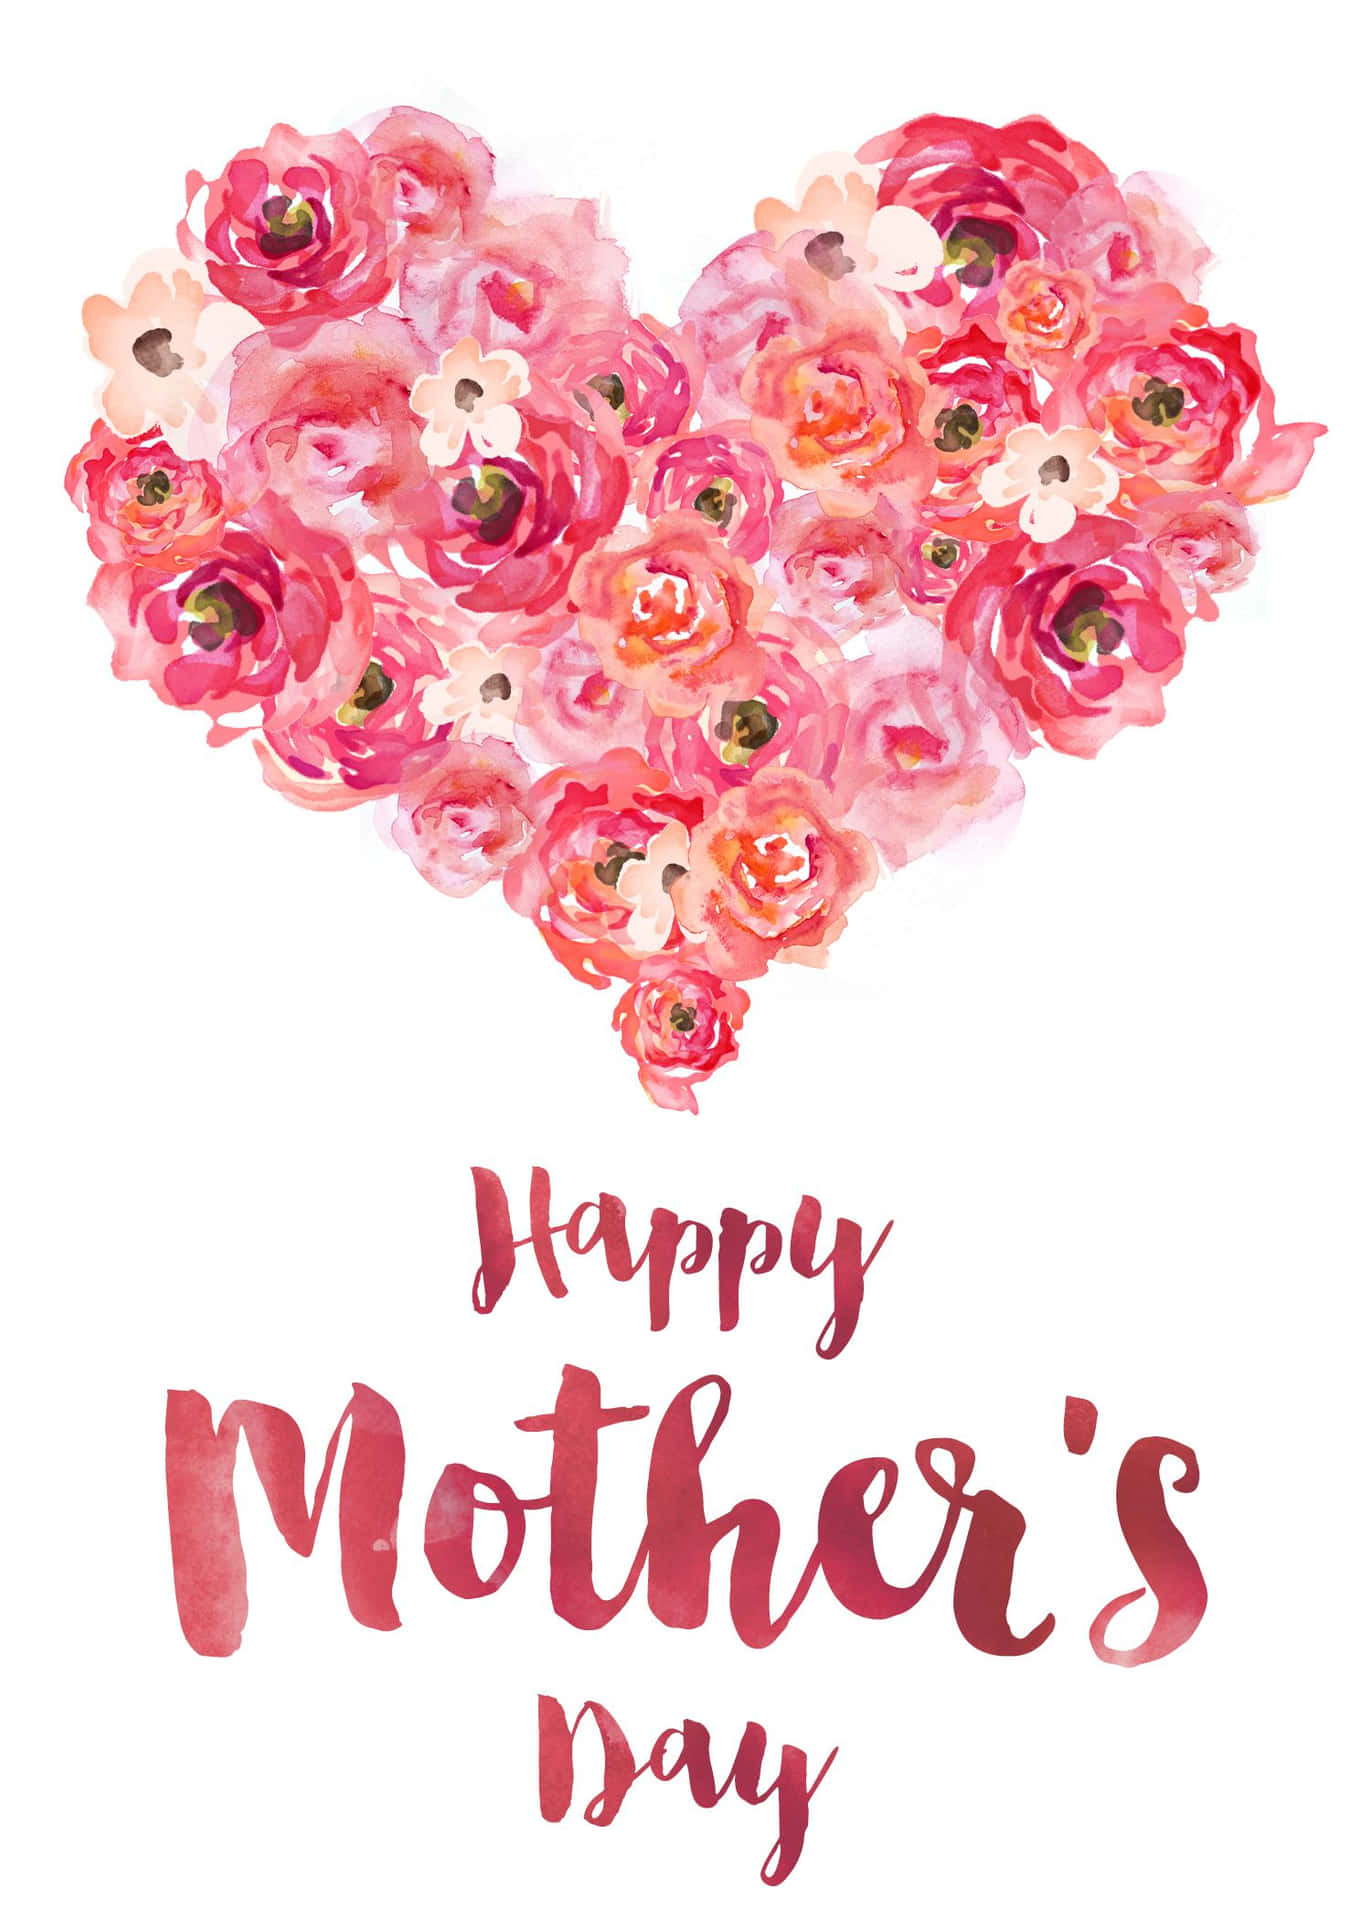 Felicefesta Della Mamma: Cuore Rosa Con Fiori In Alta Definizione. Sfondo